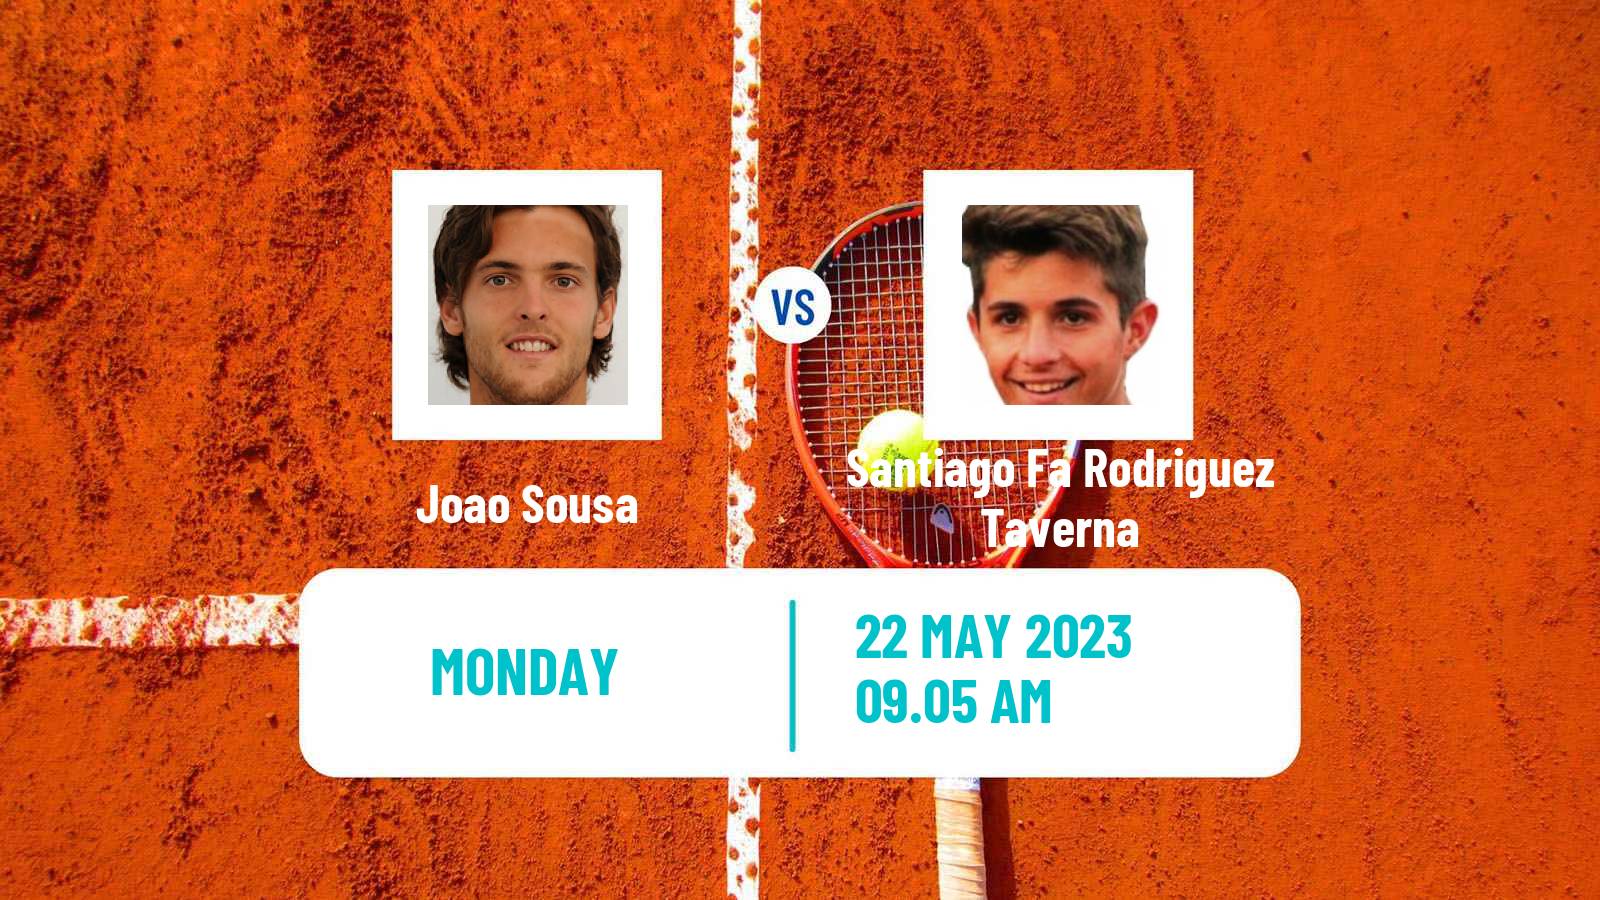 Tennis ATP Roland Garros Joao Sousa - Santiago Fa Rodriguez Taverna